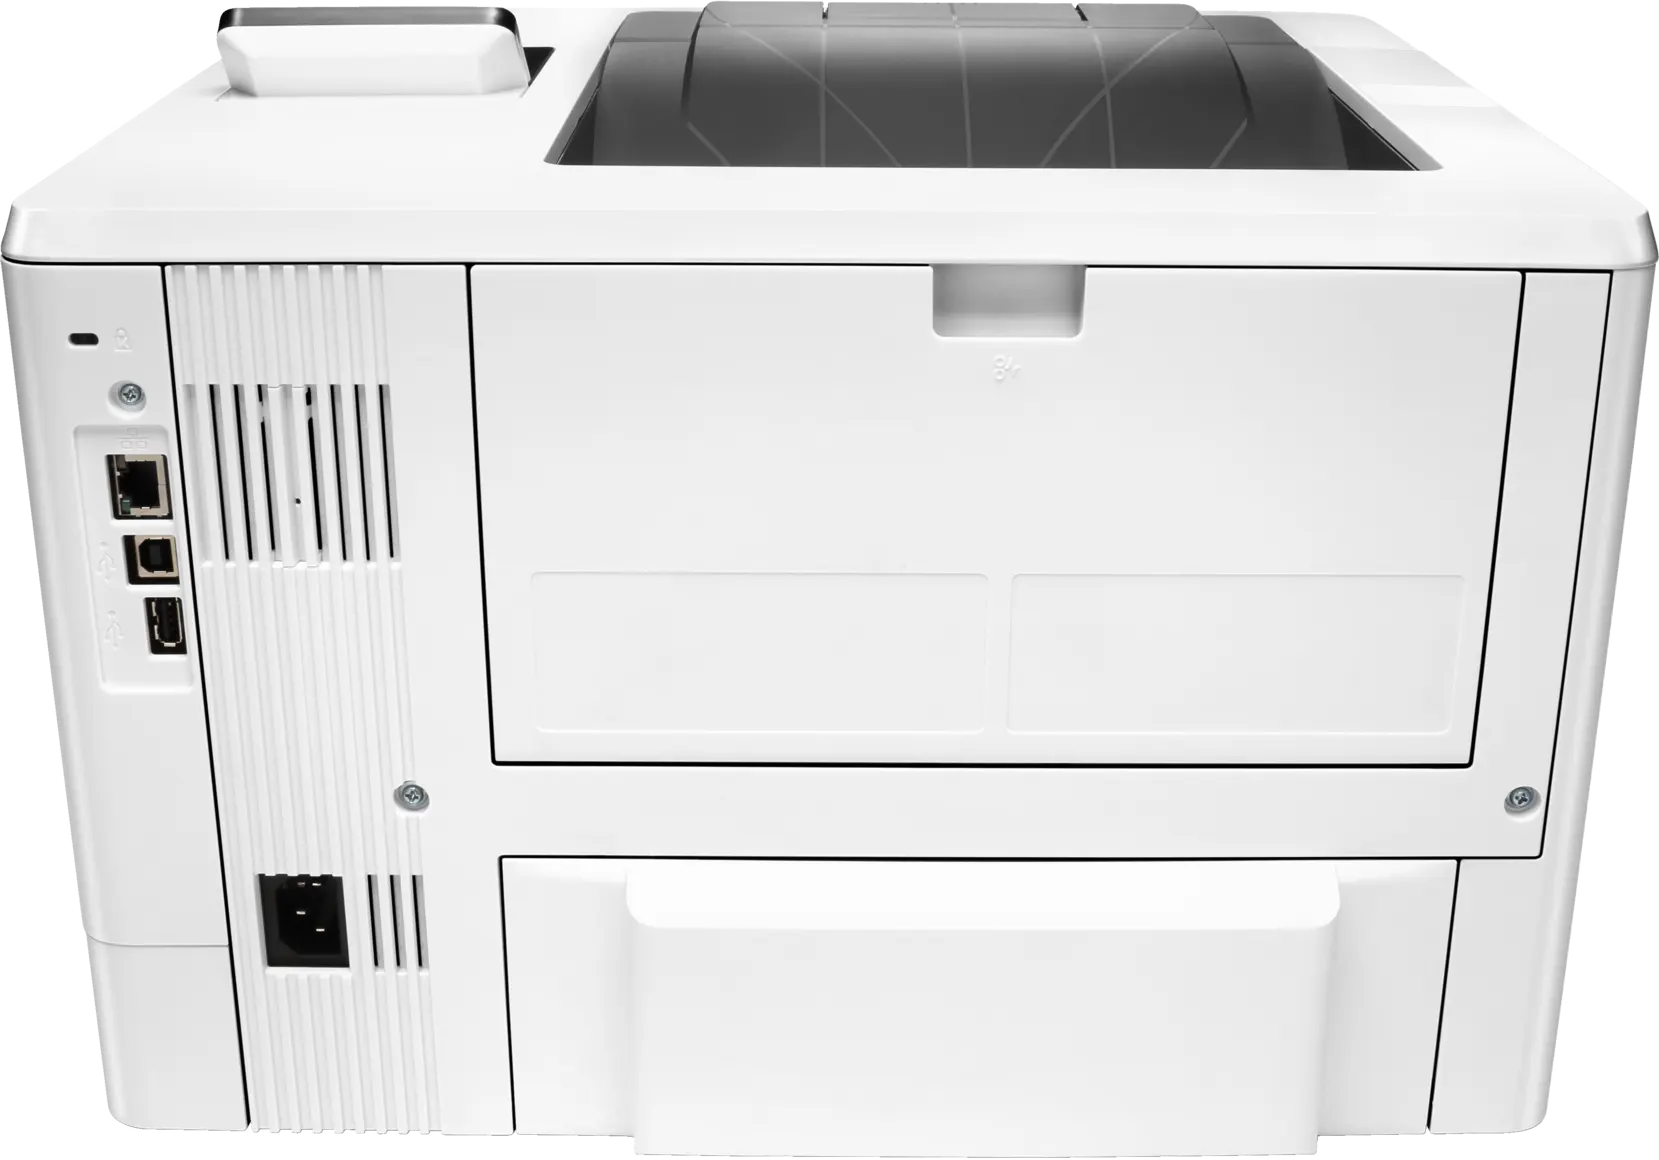 HP LaserJet Pro M501dn Printer (J8H61A), Duplex Printing, White